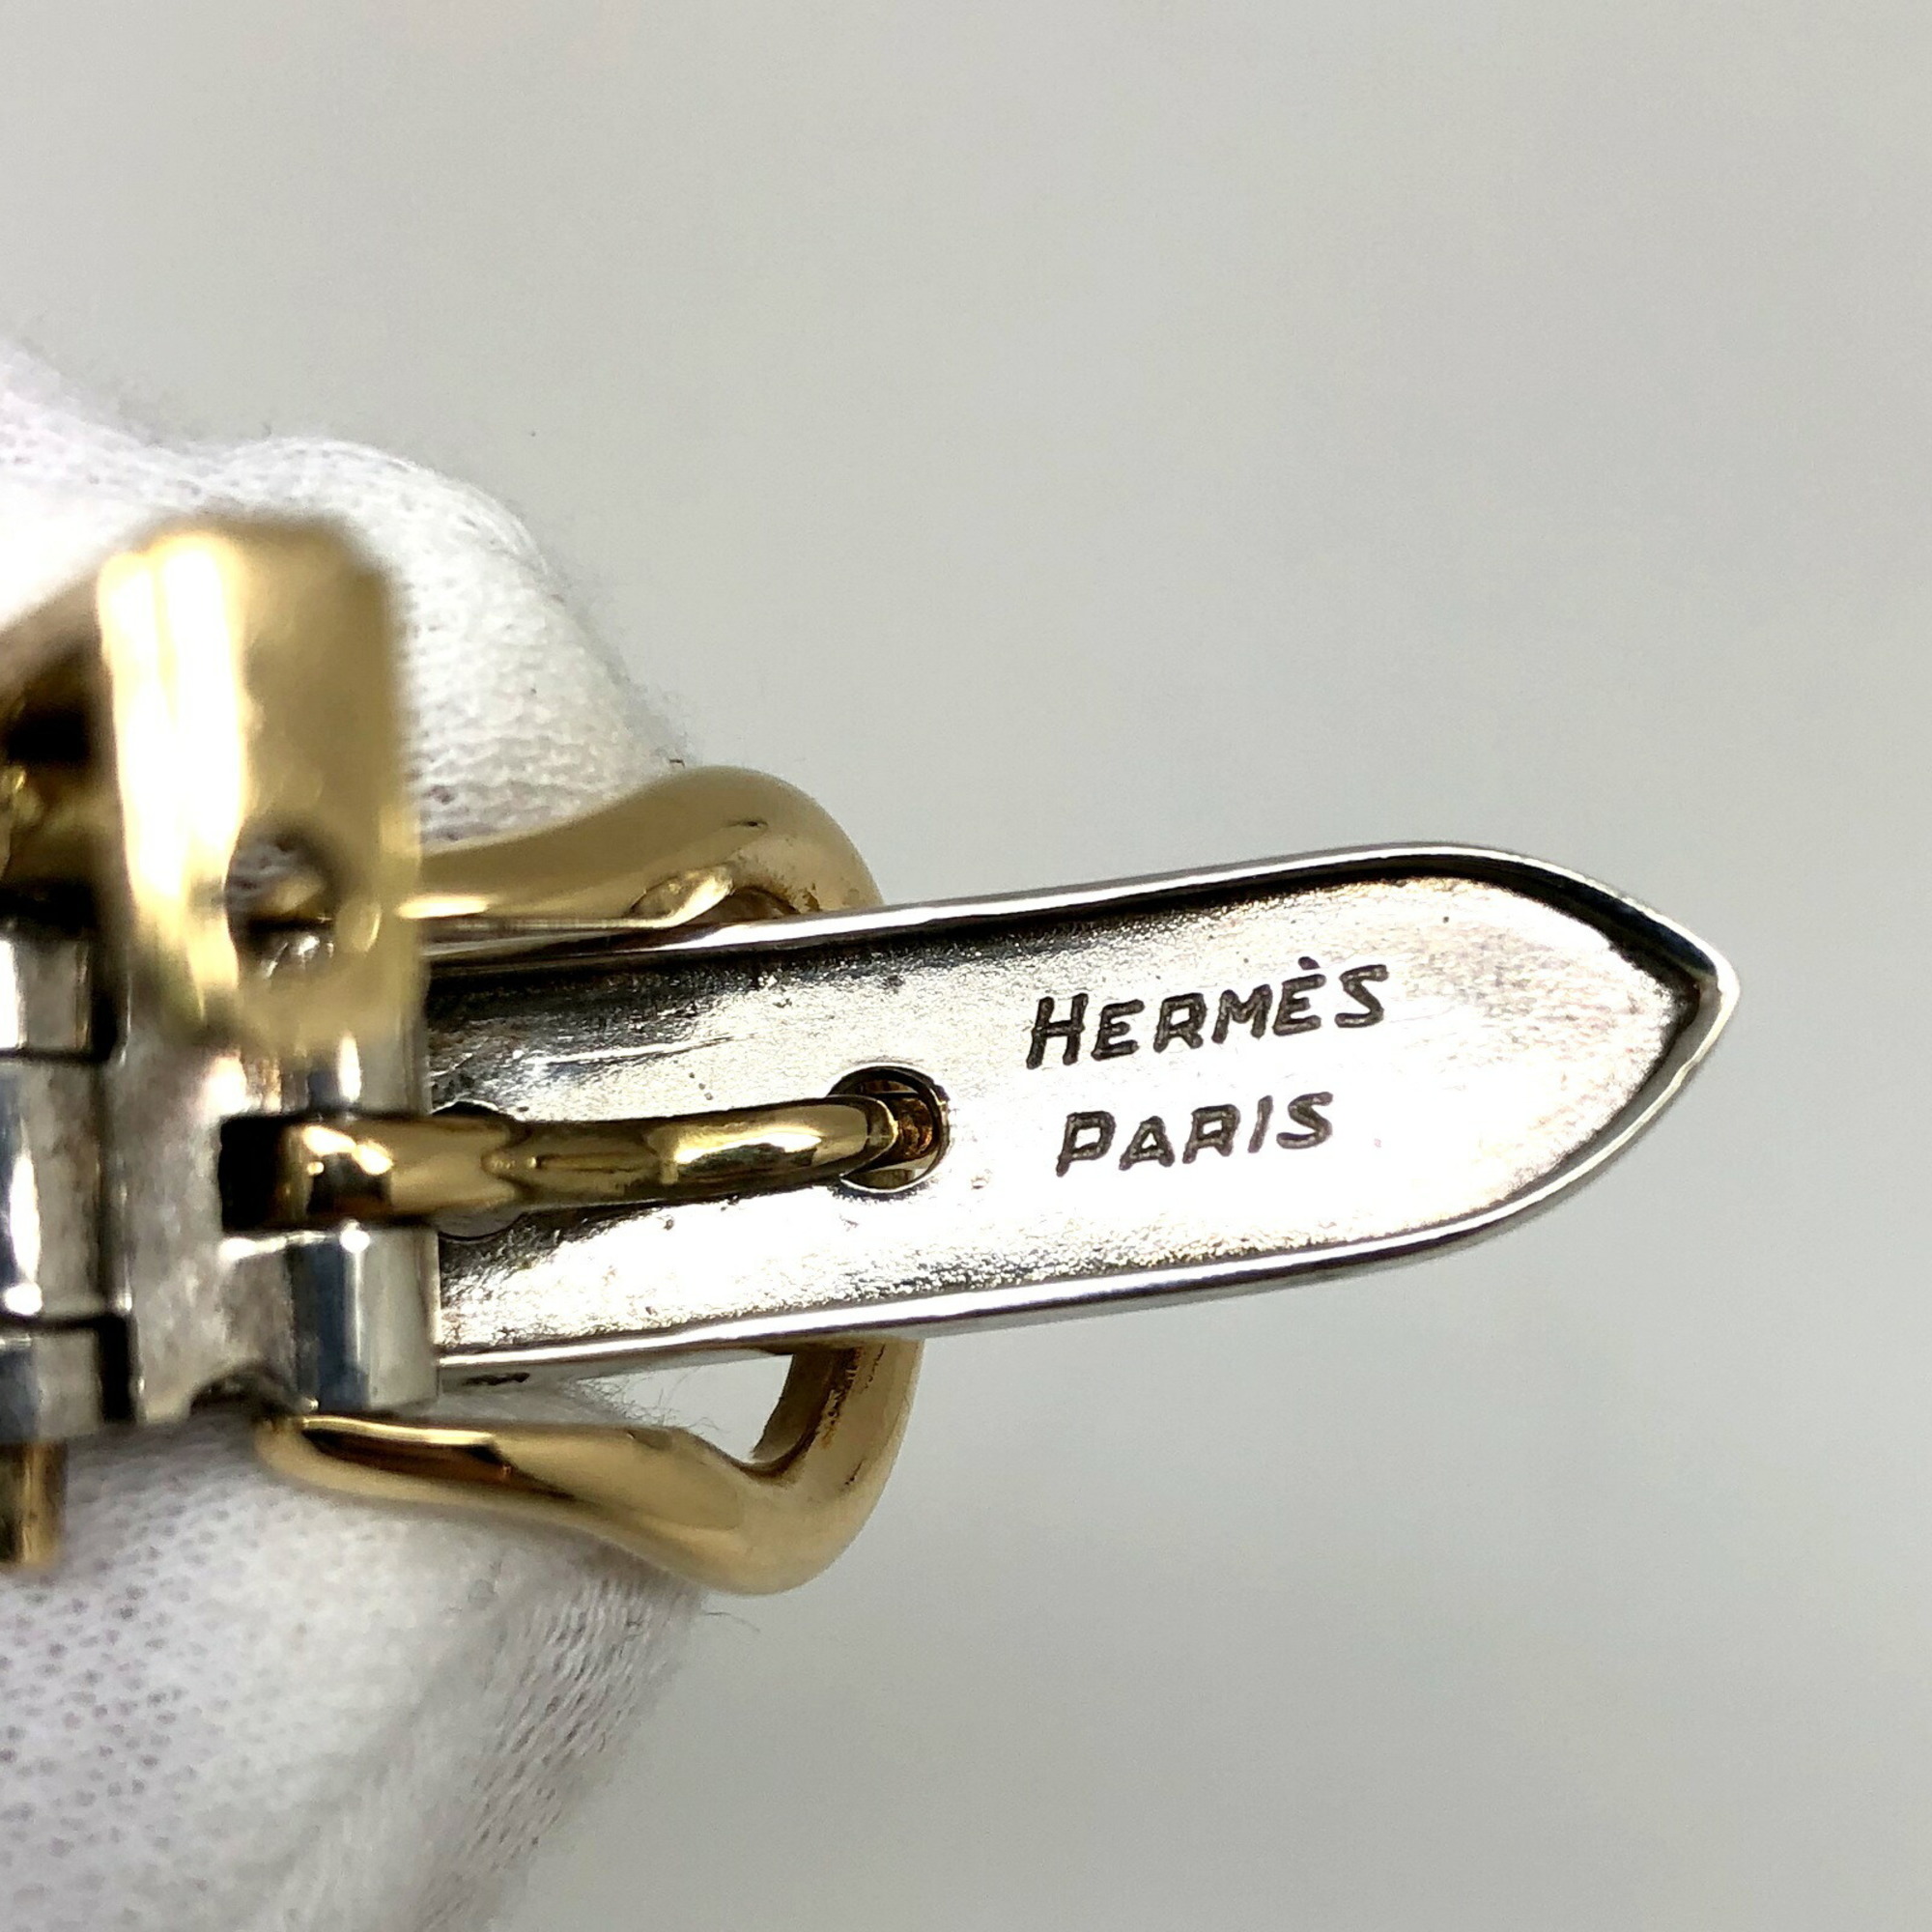 HERMES Bookle Serie PM Bracelet Silver SILVER GOLD 750 925 ITU8BDOGLAV4